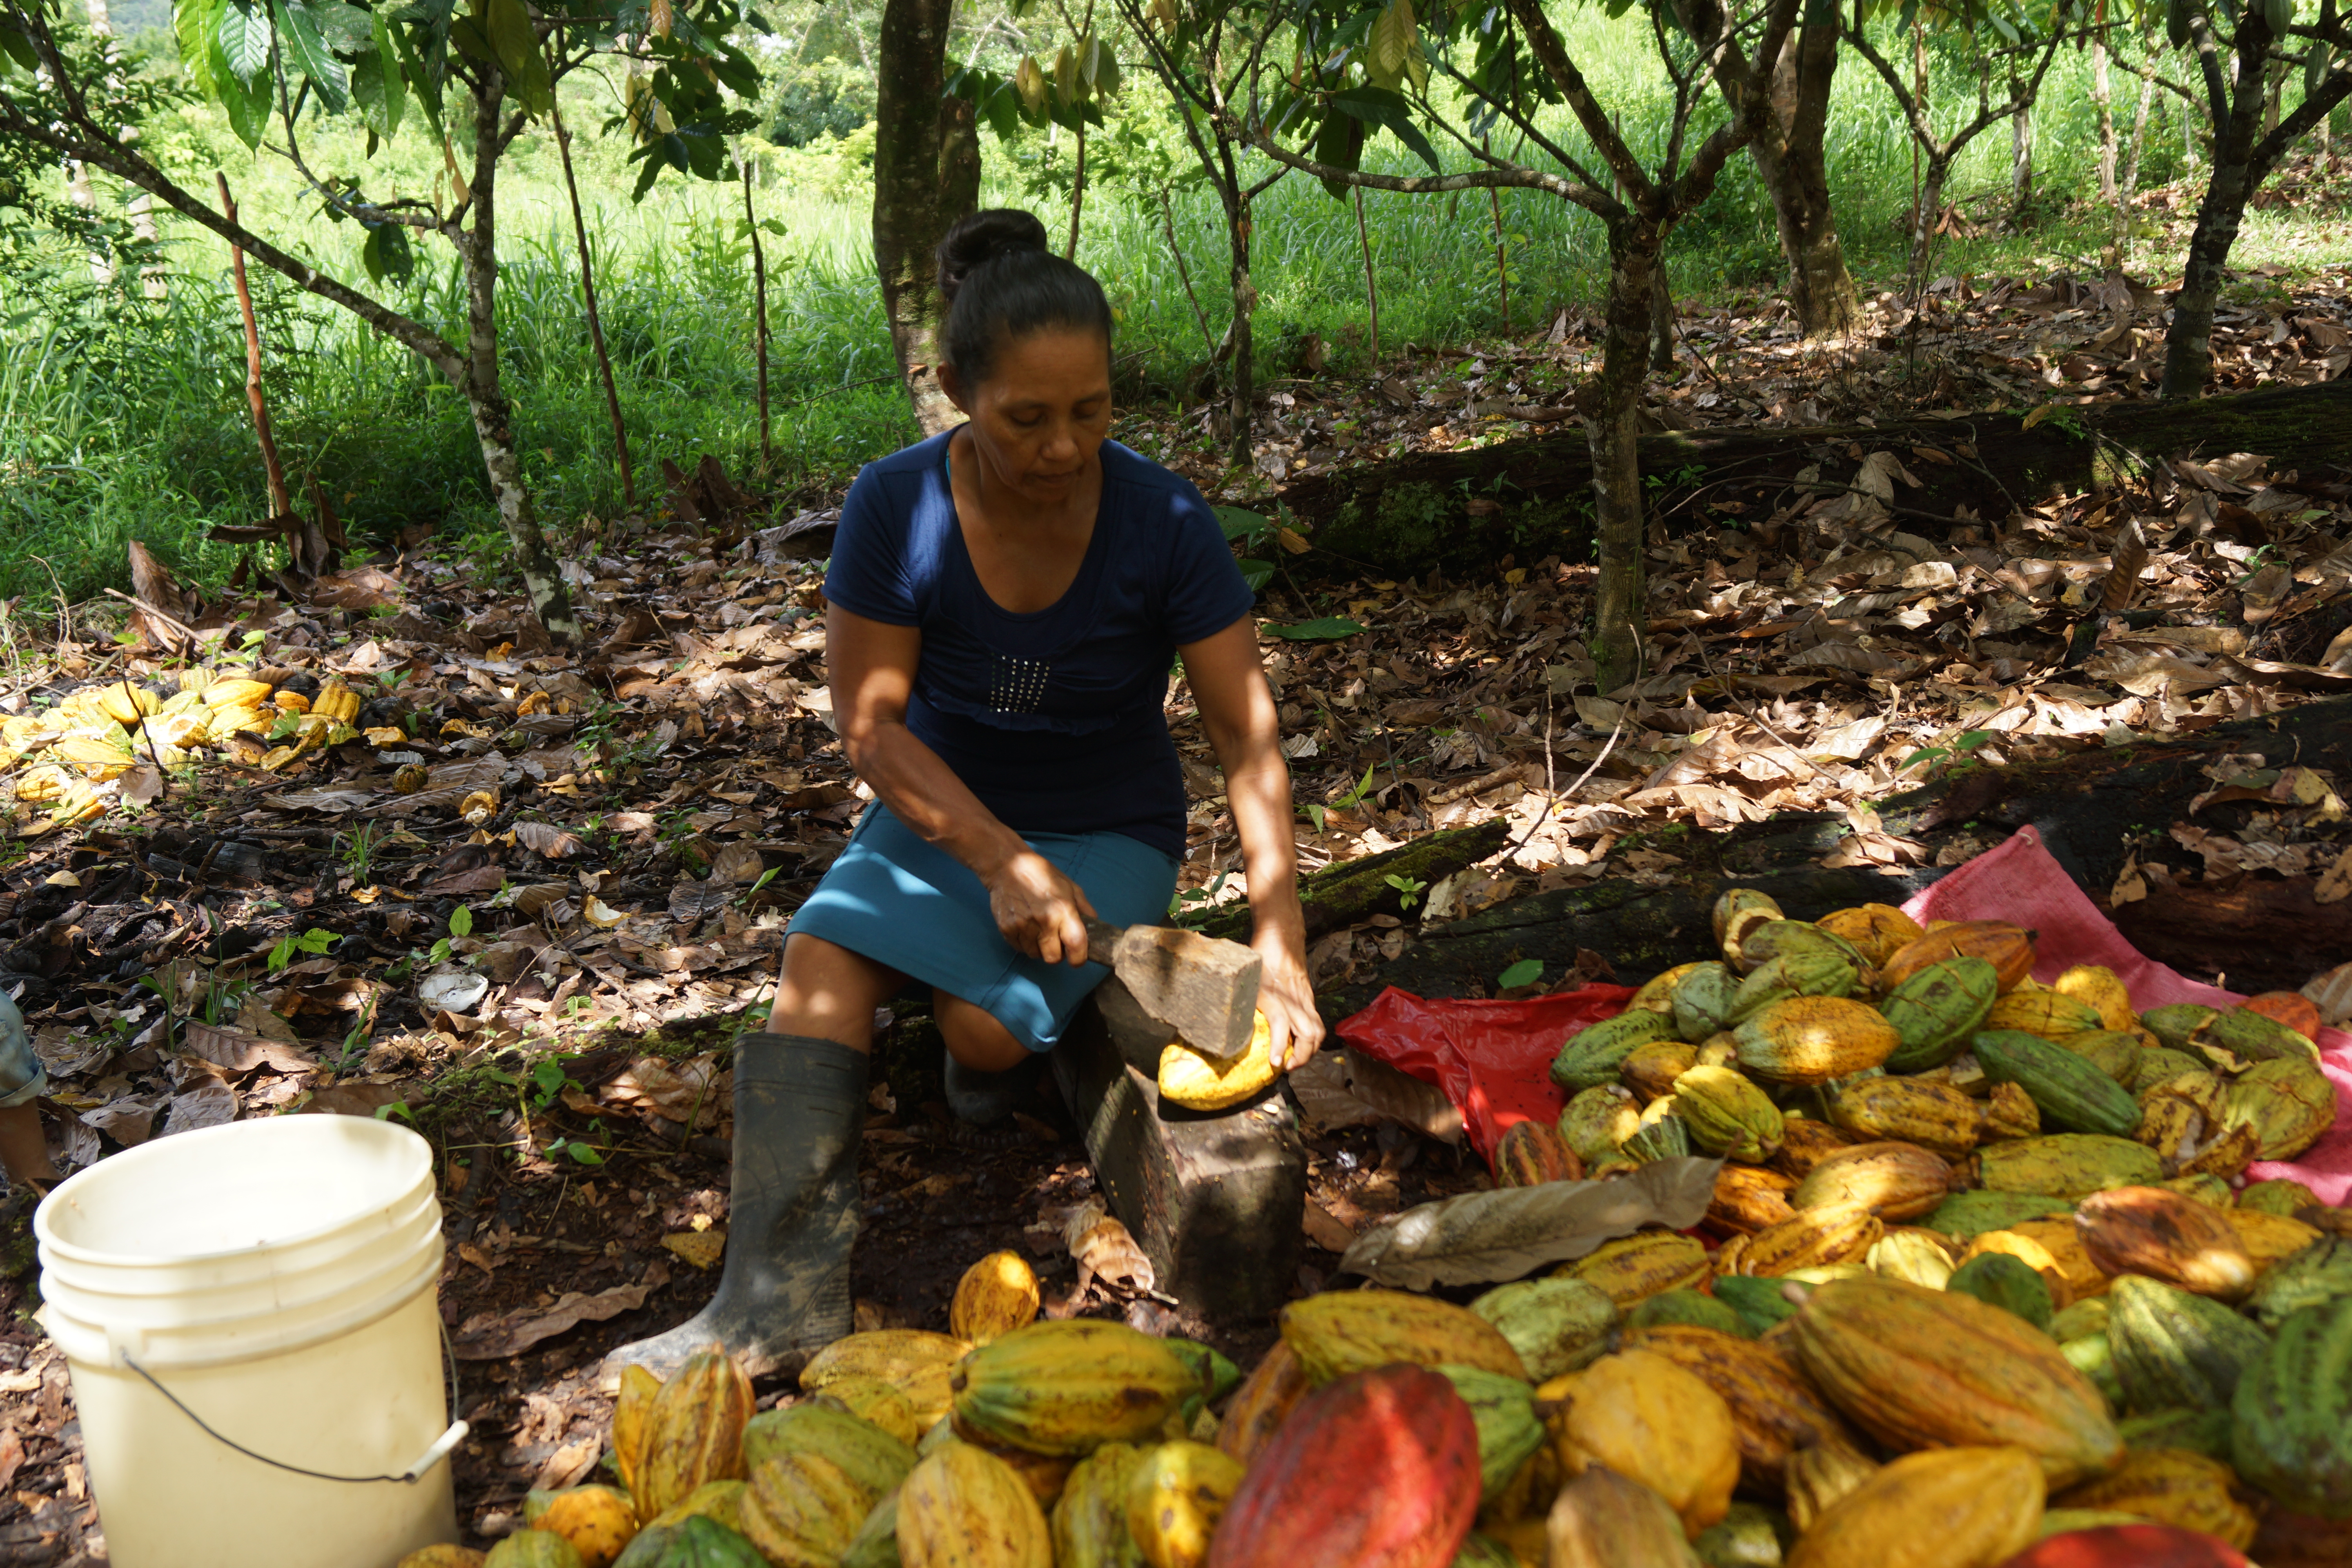 El rubro Cacao es uno de los que más auge ha venido tomando en los últimos años en el Triángulo Minero, el cual aporta aproximadamente entre el 30-35% de la producción nacional del país, lo que significan unas 1,200 – 1,500 toneladas de acuerdo a datos de la empresa RITTER SPORT NICARAGUA S.A, principal mercado de este rubro en el país, sin embargo el aporte de las mujeres productoras en la producción es invisibilizado en las coberturas mediáticas.